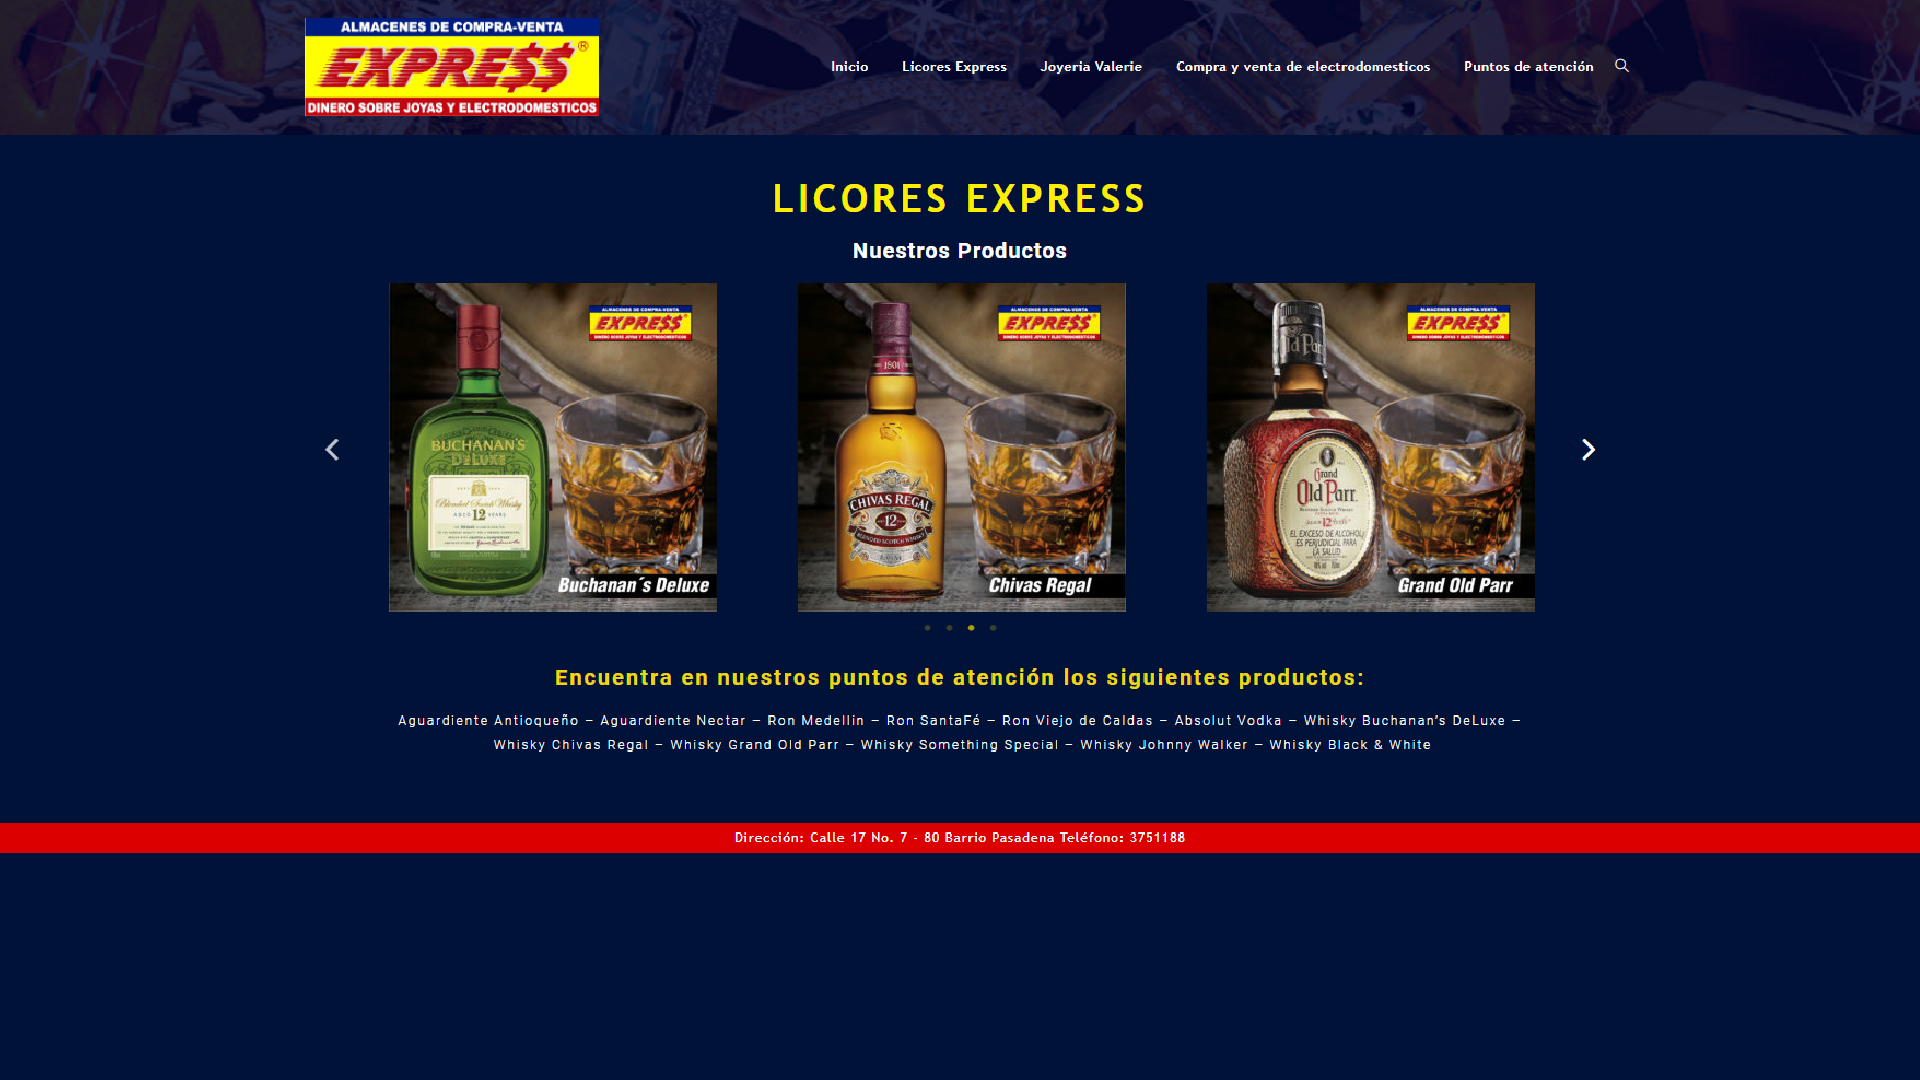 Compra & Venta Express - Página web informativa